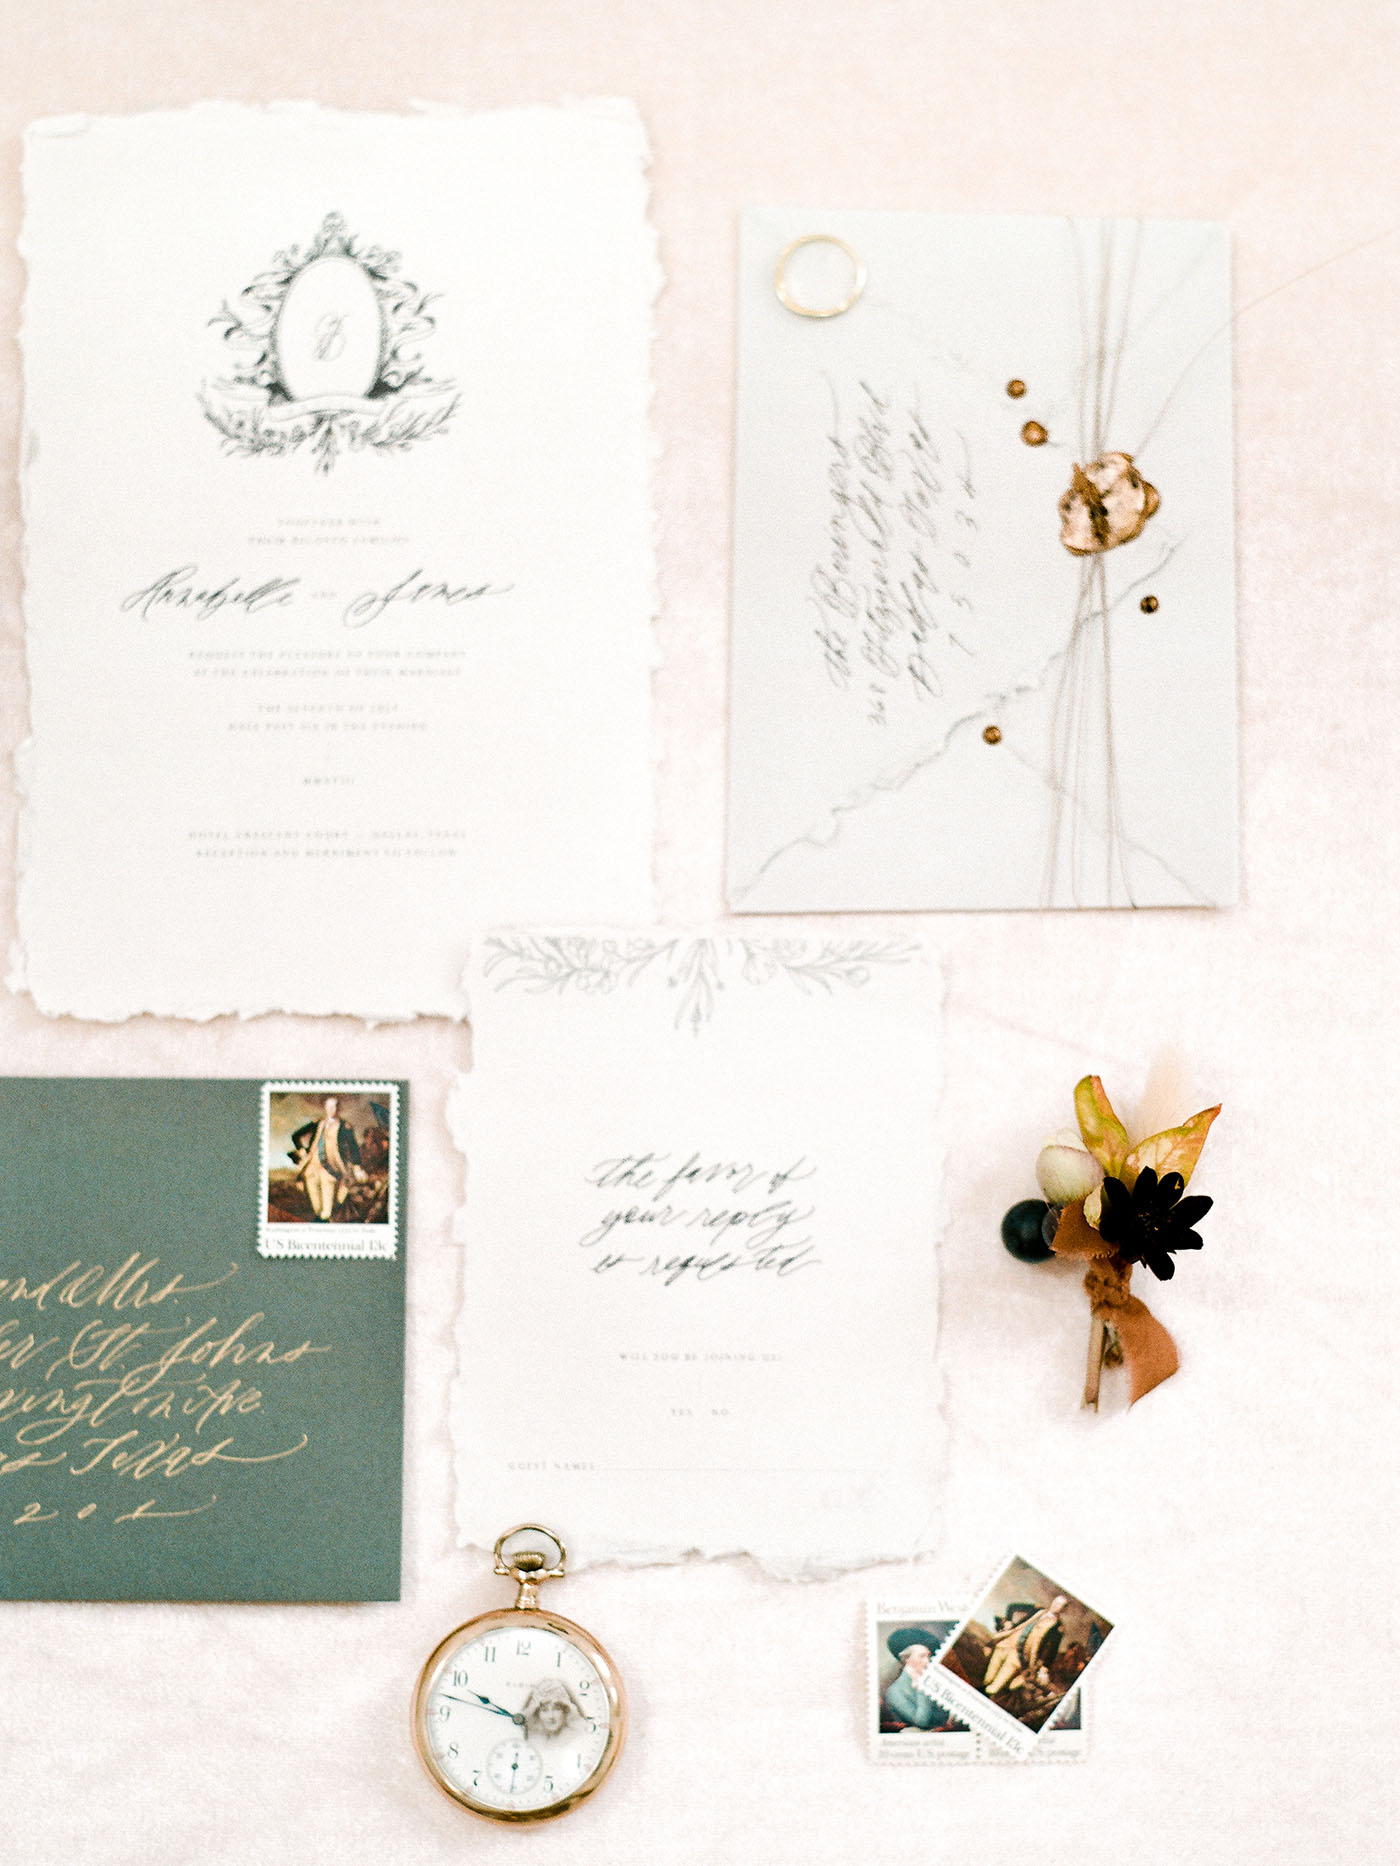 Fine Art Wedding Invitation Suite Design - Sarah Ann Design - Magnolia Rouge Feature